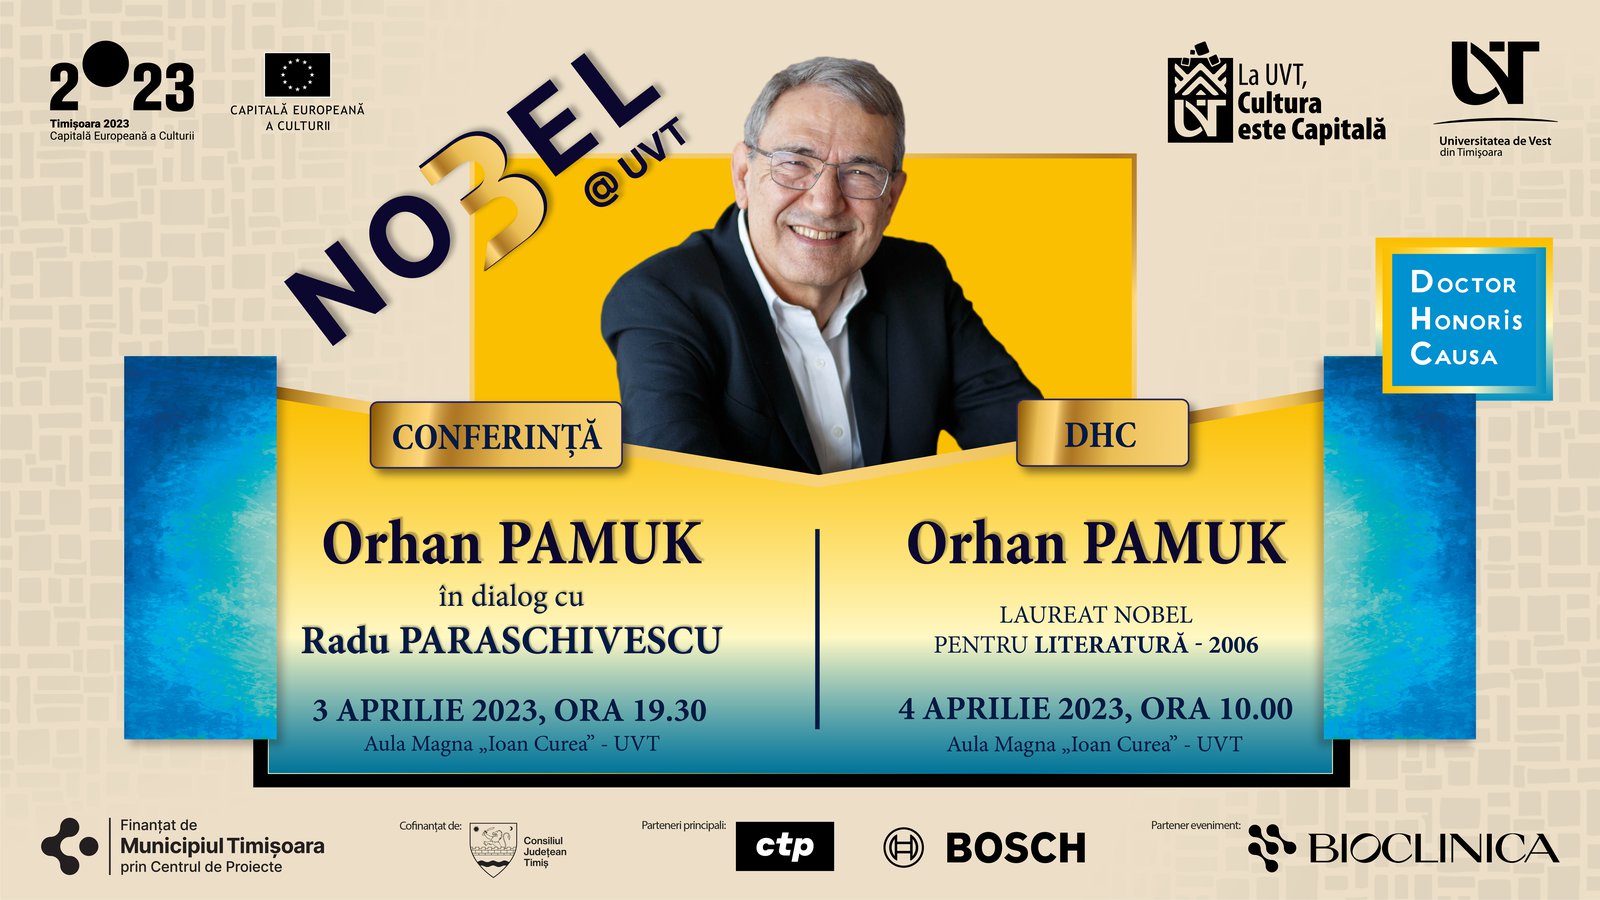 Conferința și Festivitatea DHC – ORHAN PAMUK, laureat al Premiului Nobel pentru Literatură, 3 Aprilie 2023